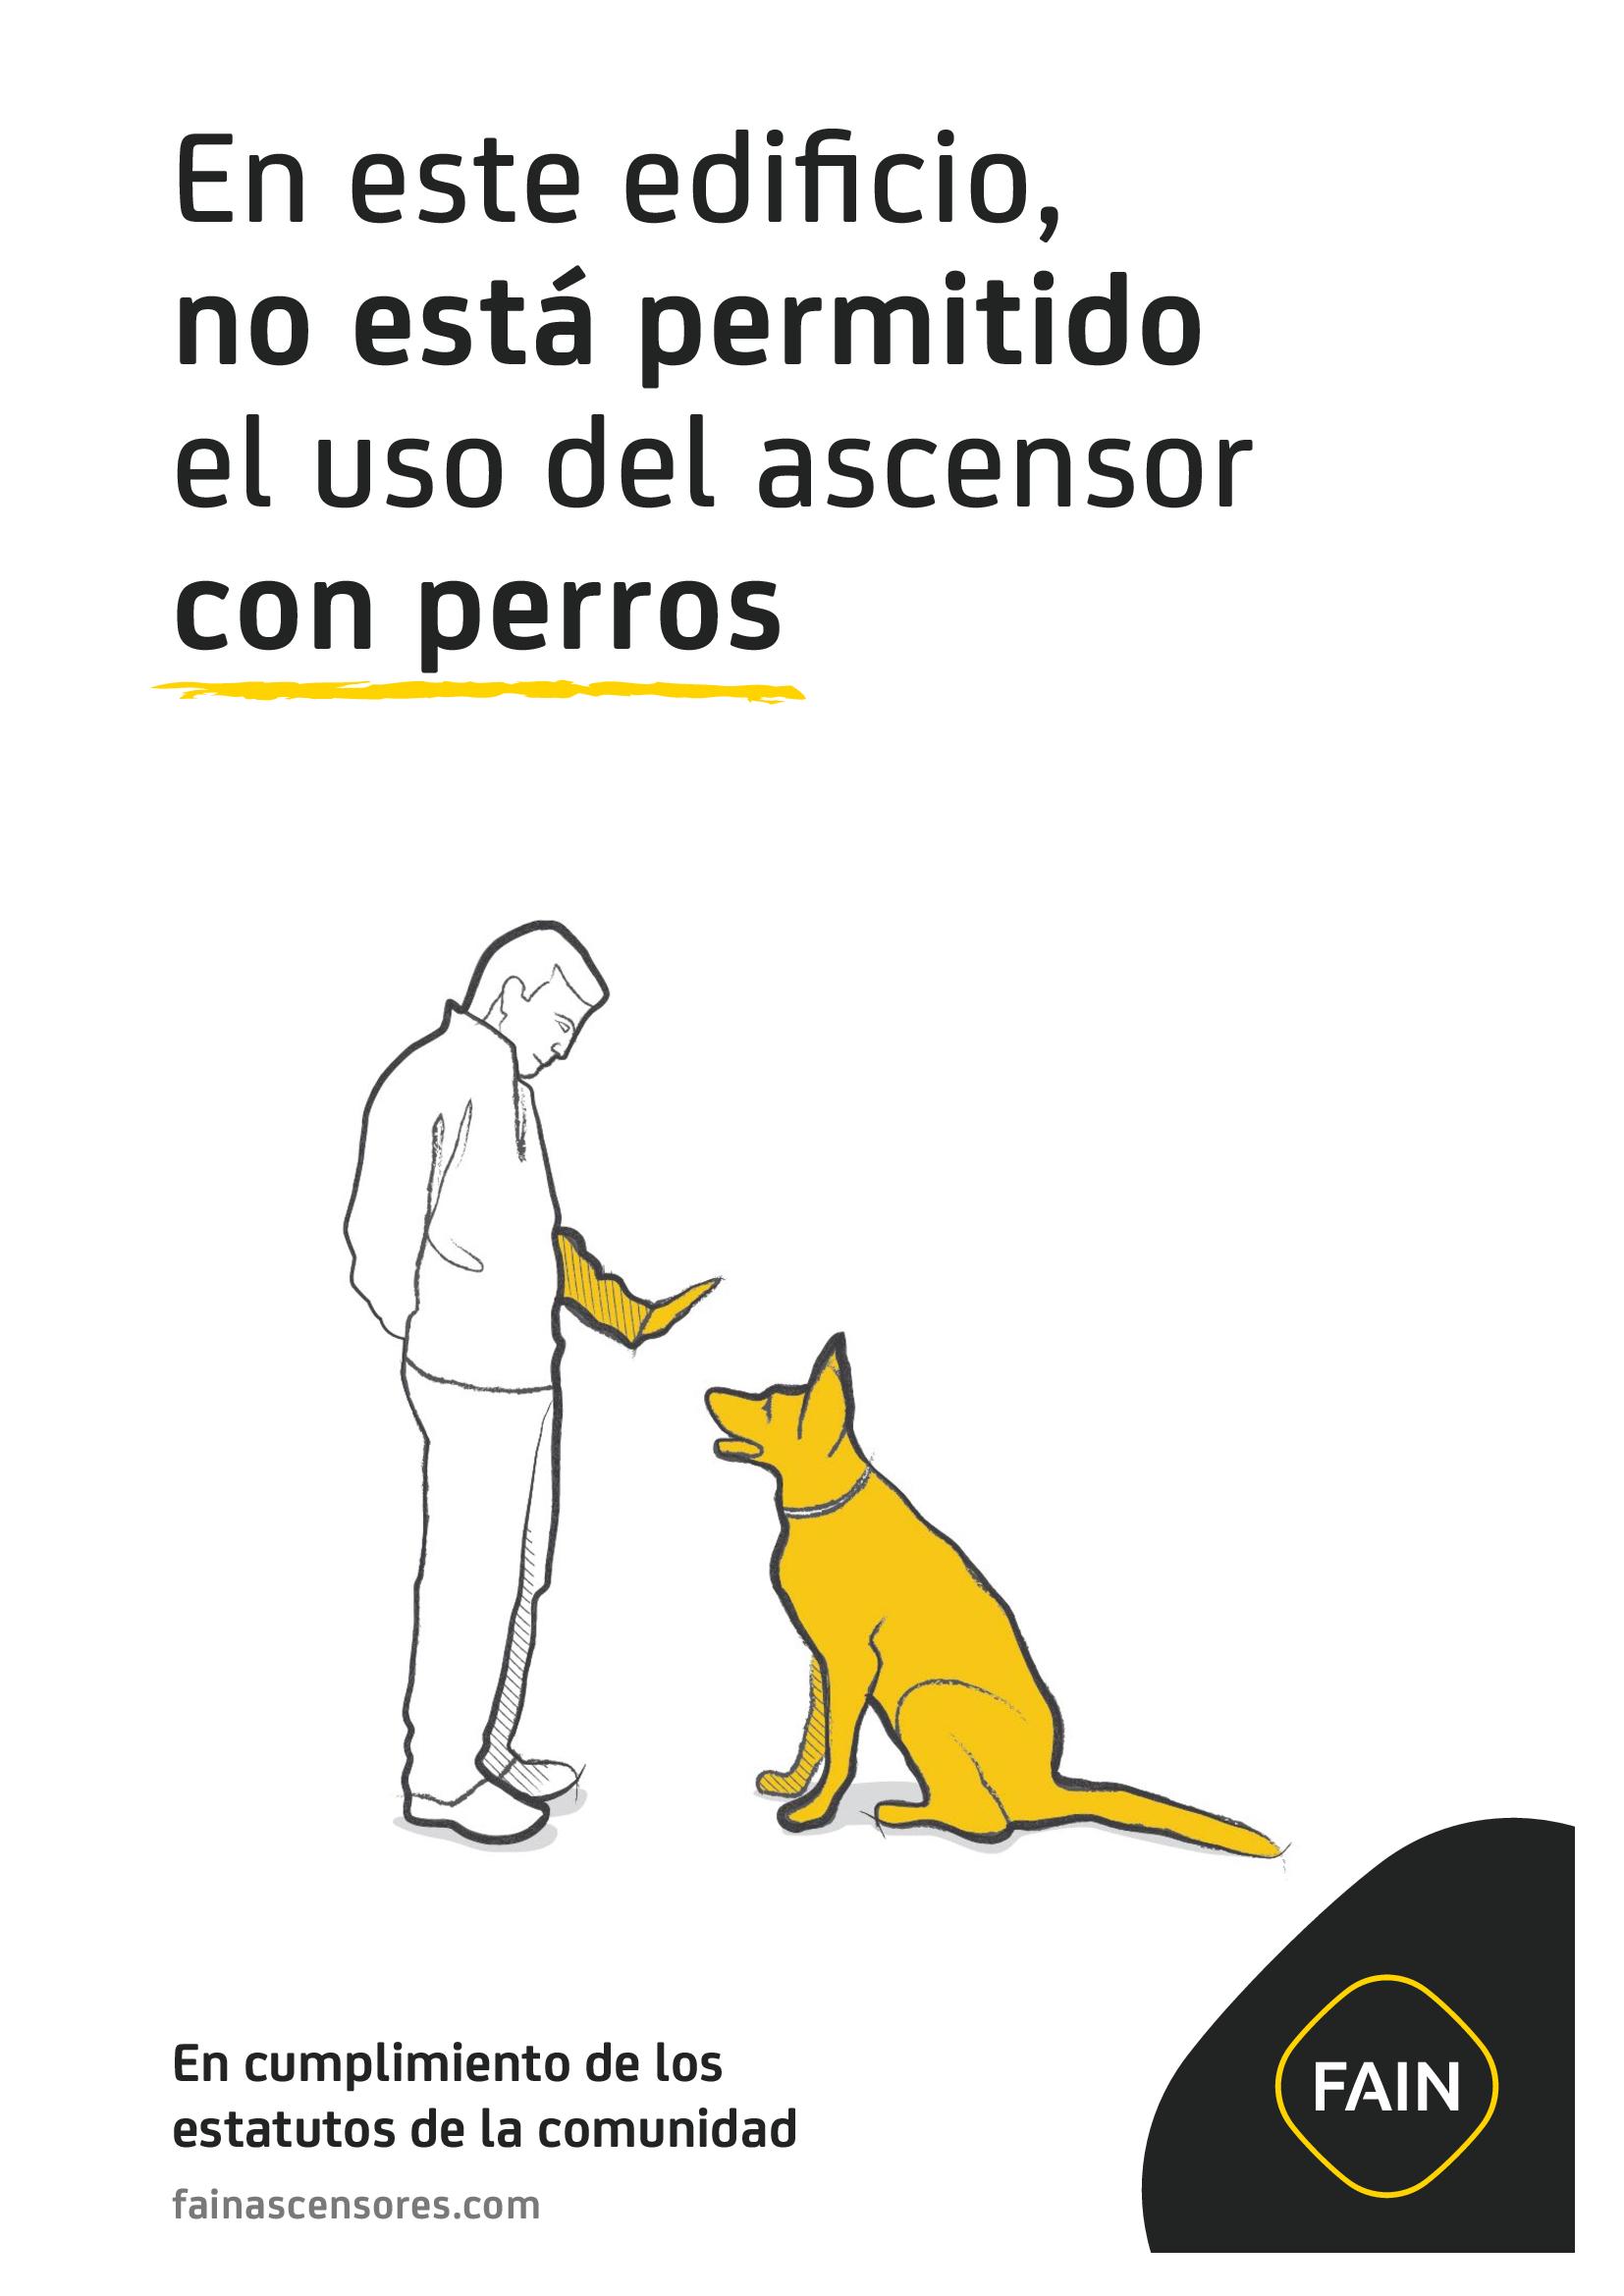 Cartel informativo para comunidades de vecinos: No usar con perros